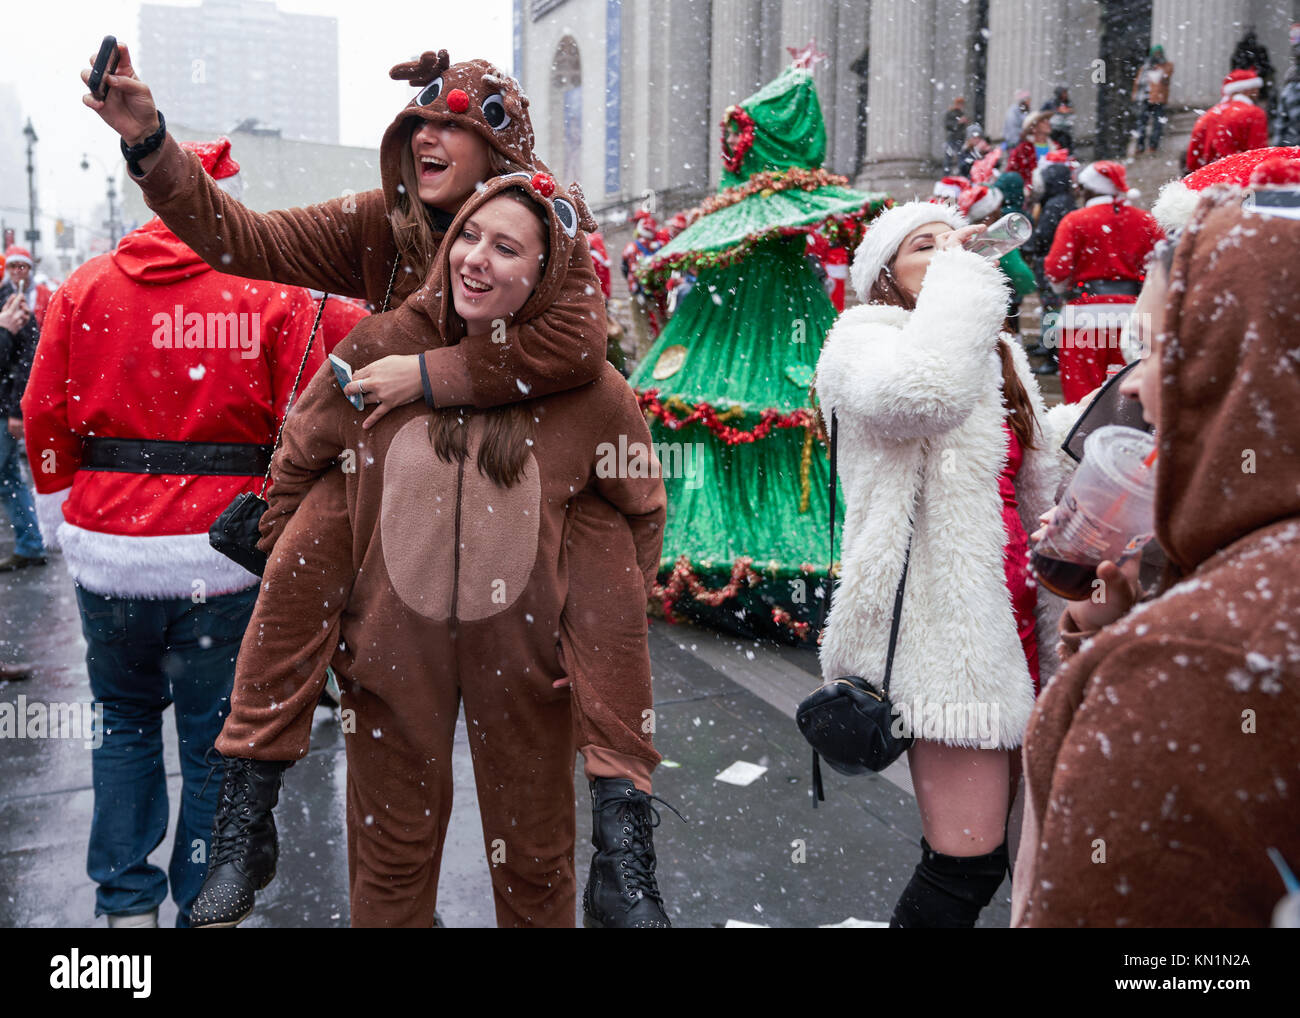 New York, États-Unis, 9 déc 2017. Les gens s'amuser après avoir posé pour une photo de groupe lors d'une "fête" antacon rassembler sous une tempête de foule. Photo par Enrique Shore/Alamy Live News Banque D'Images